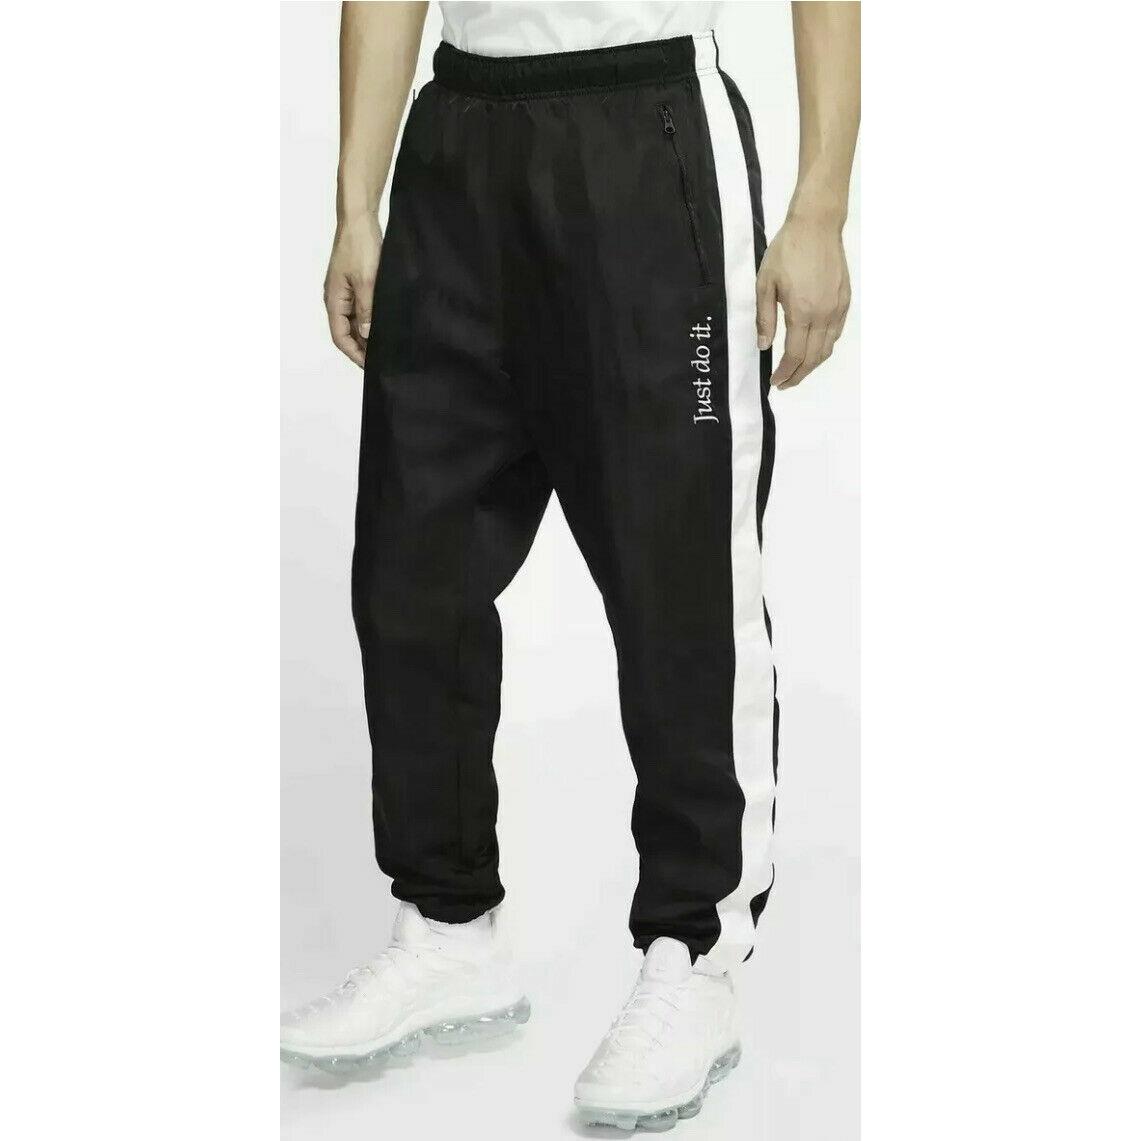 Nike Jdi Stripe Just Do It Jogger Pants Size XL White Black CI9160-010